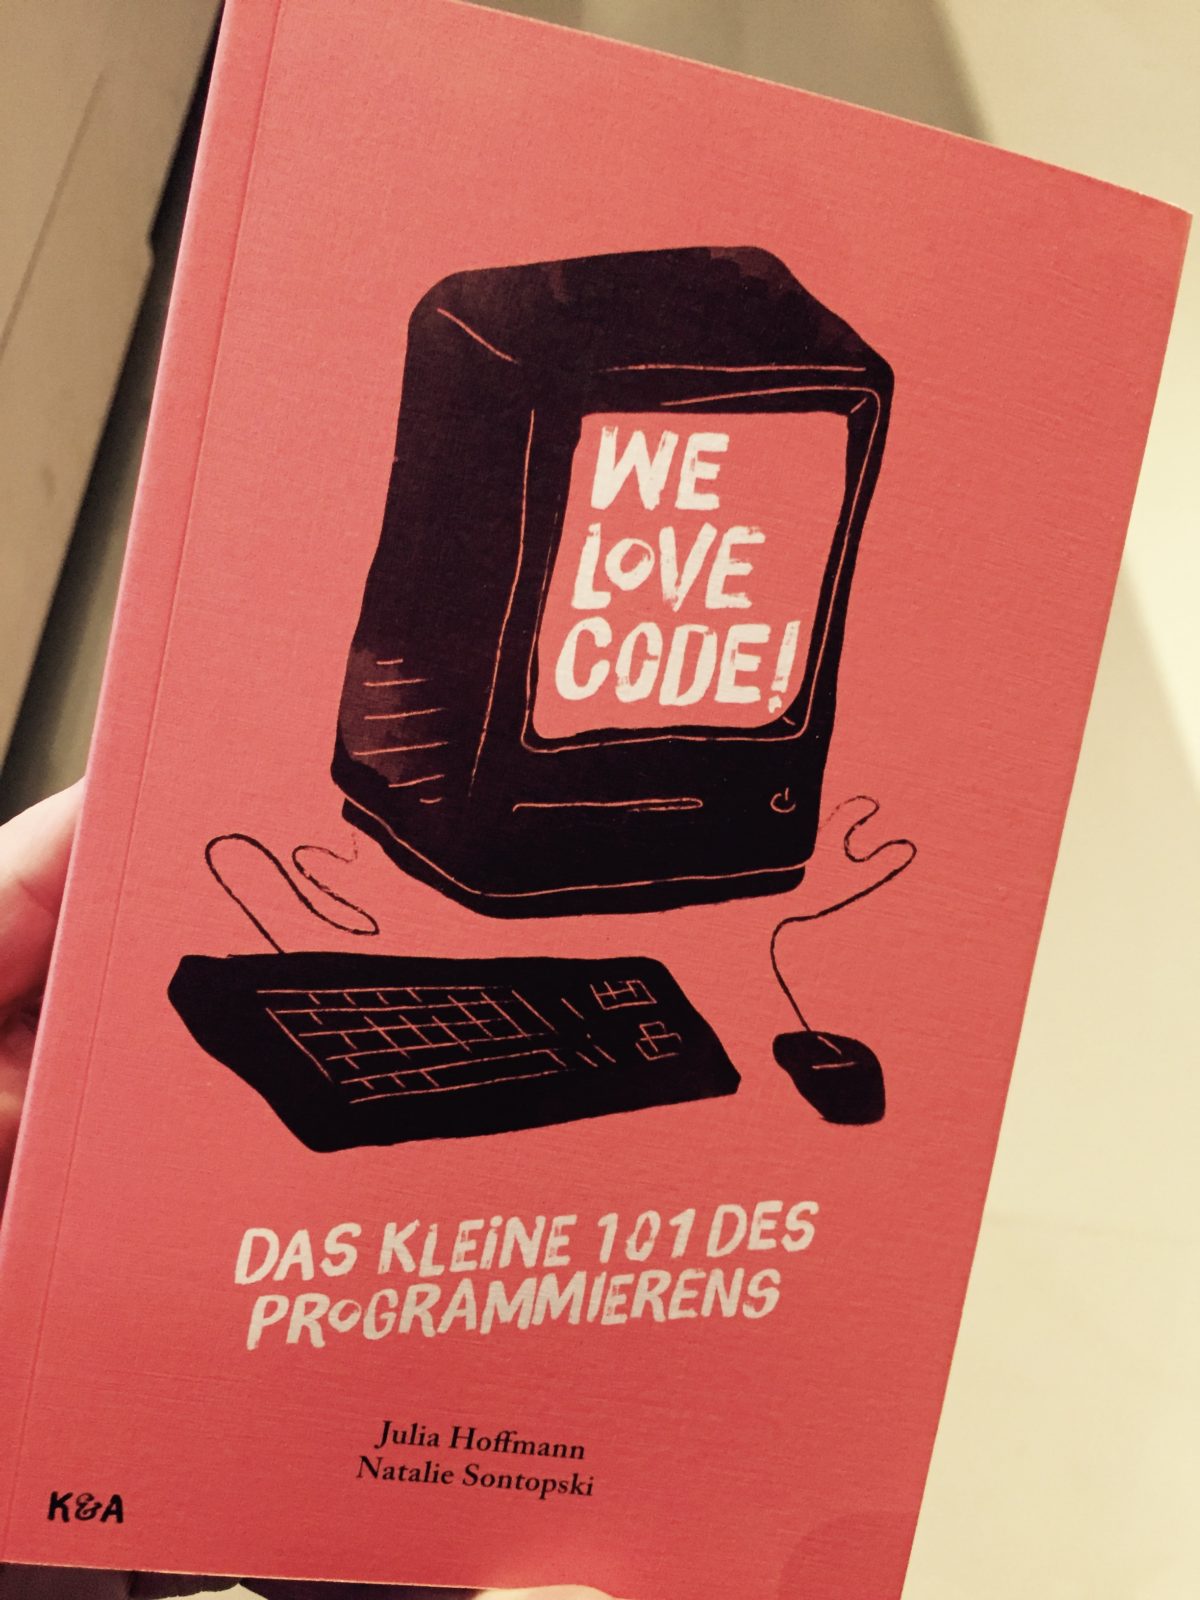 We love code